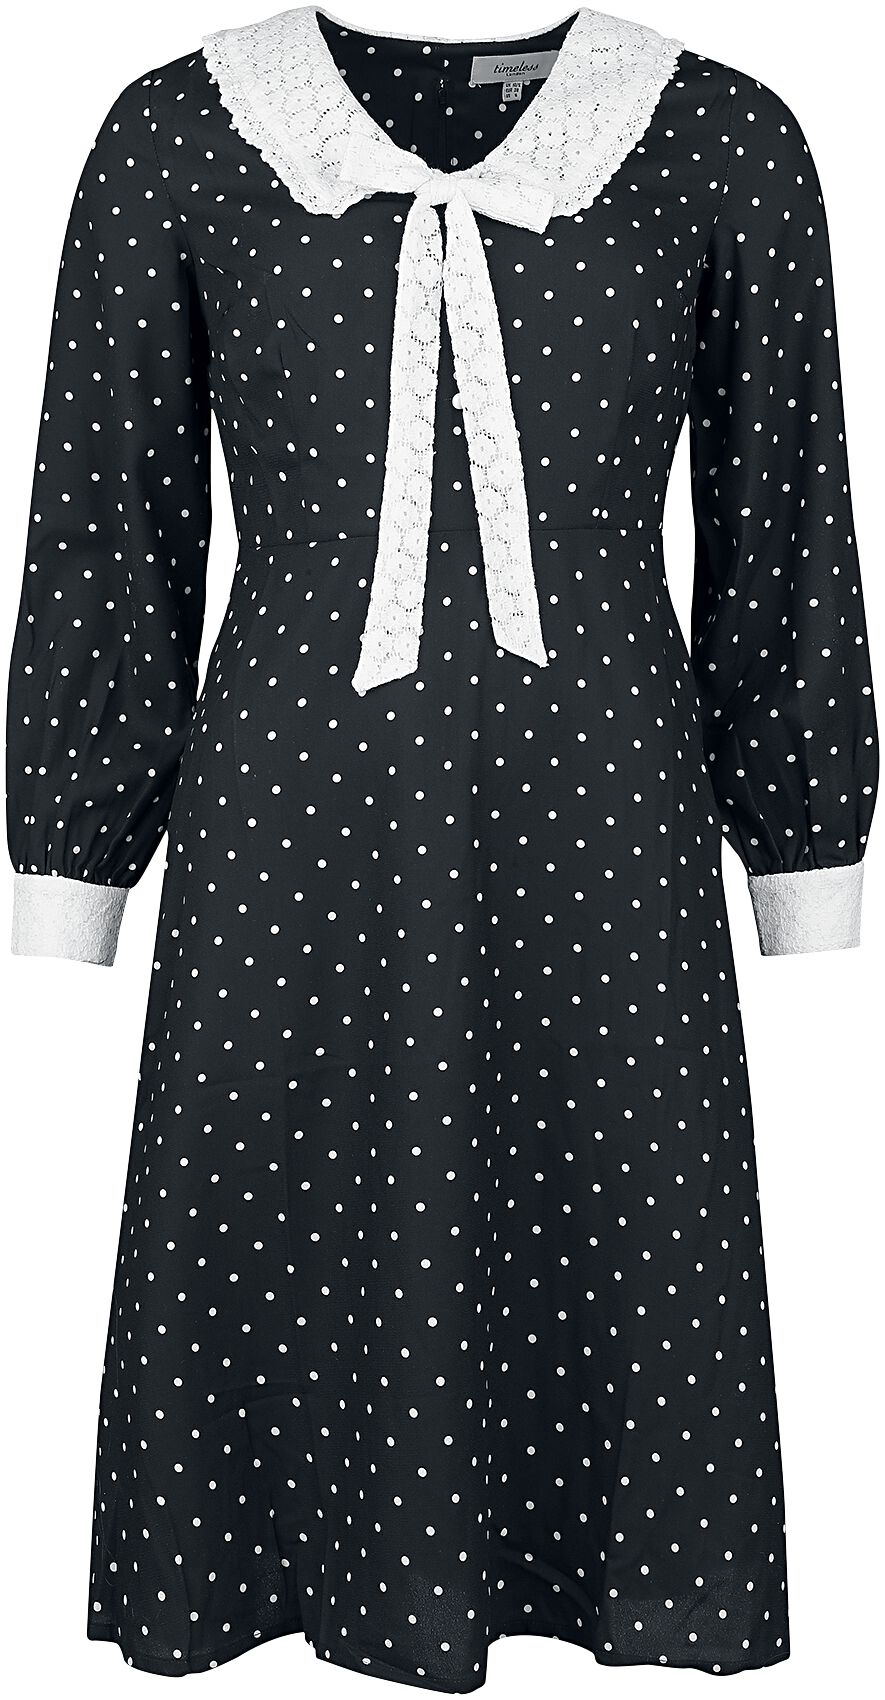 Timeless London - Rockabilly Kleid knielang - Bow Front Dress - XS bis L - für Damen - Größe M - schwarz/weiß